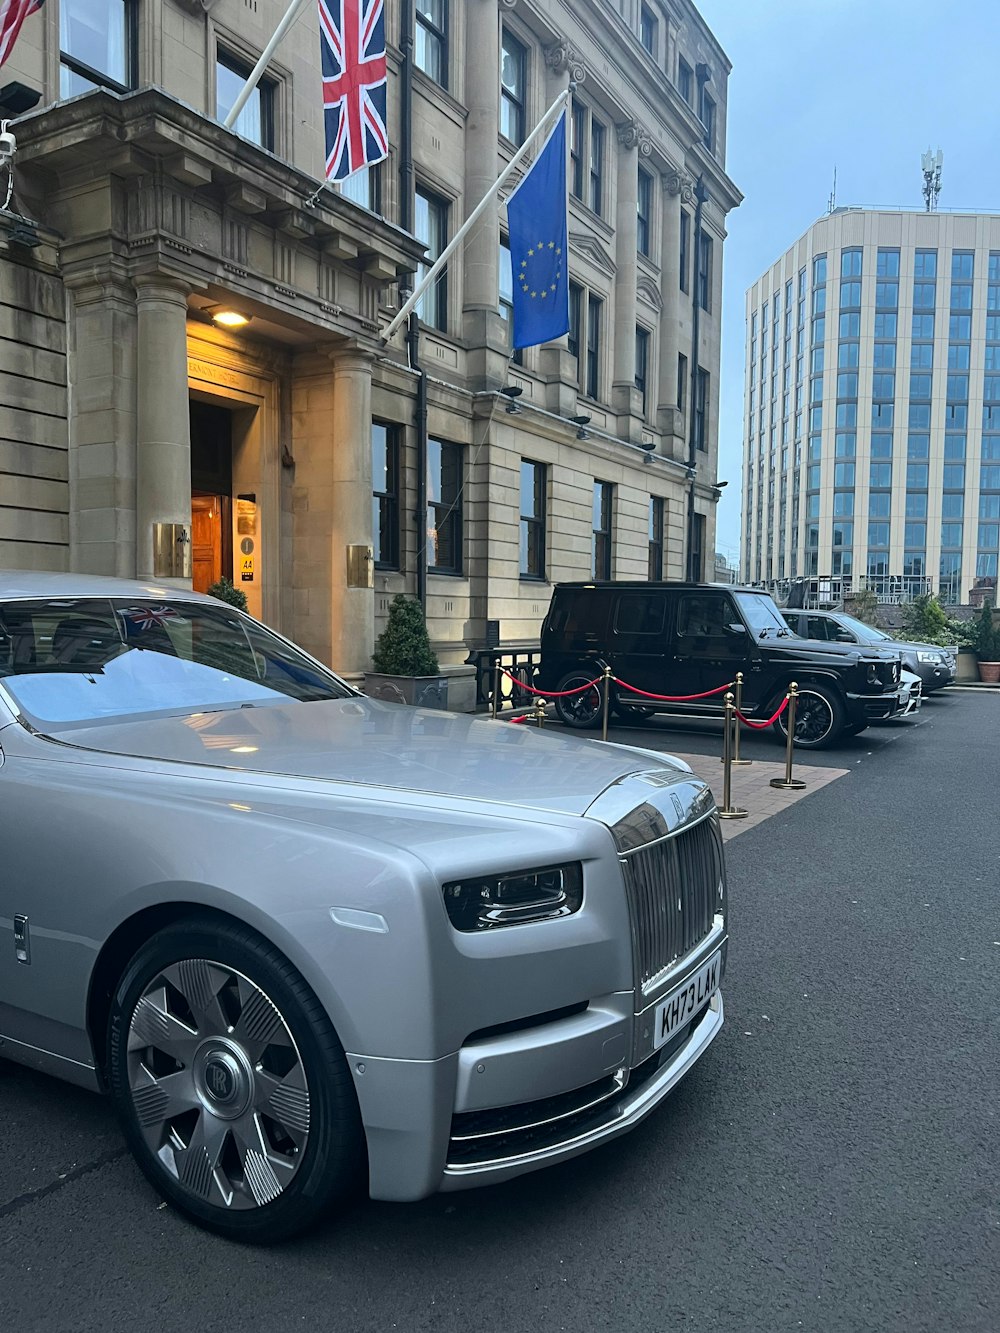 Um Rolls Royce prateado estacionado em frente a um prédio